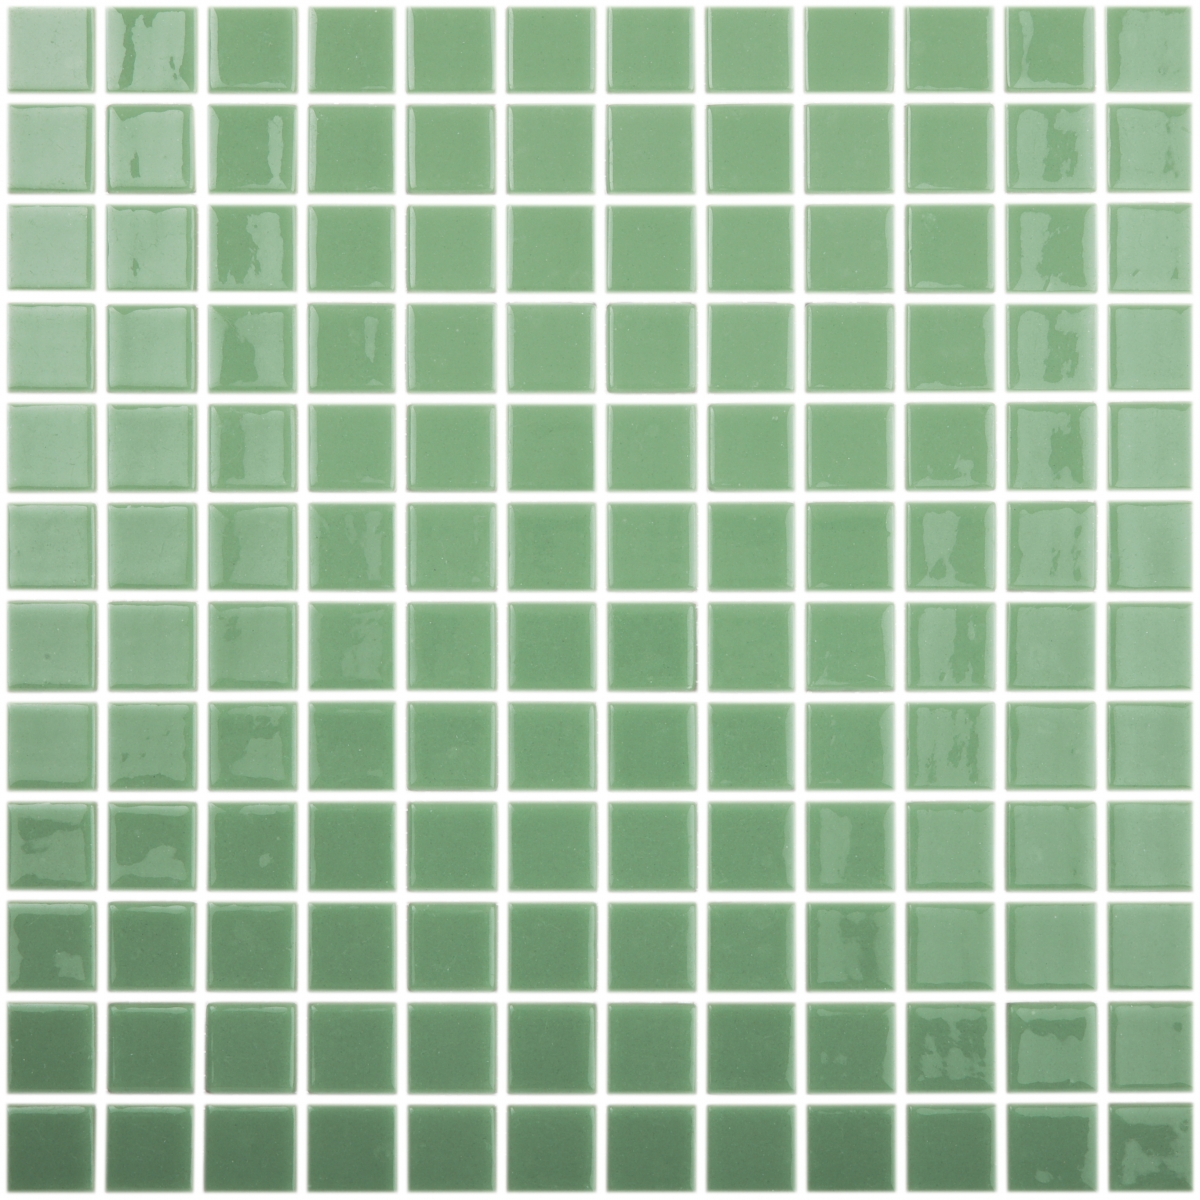 Gresite verde claro simples (m2)